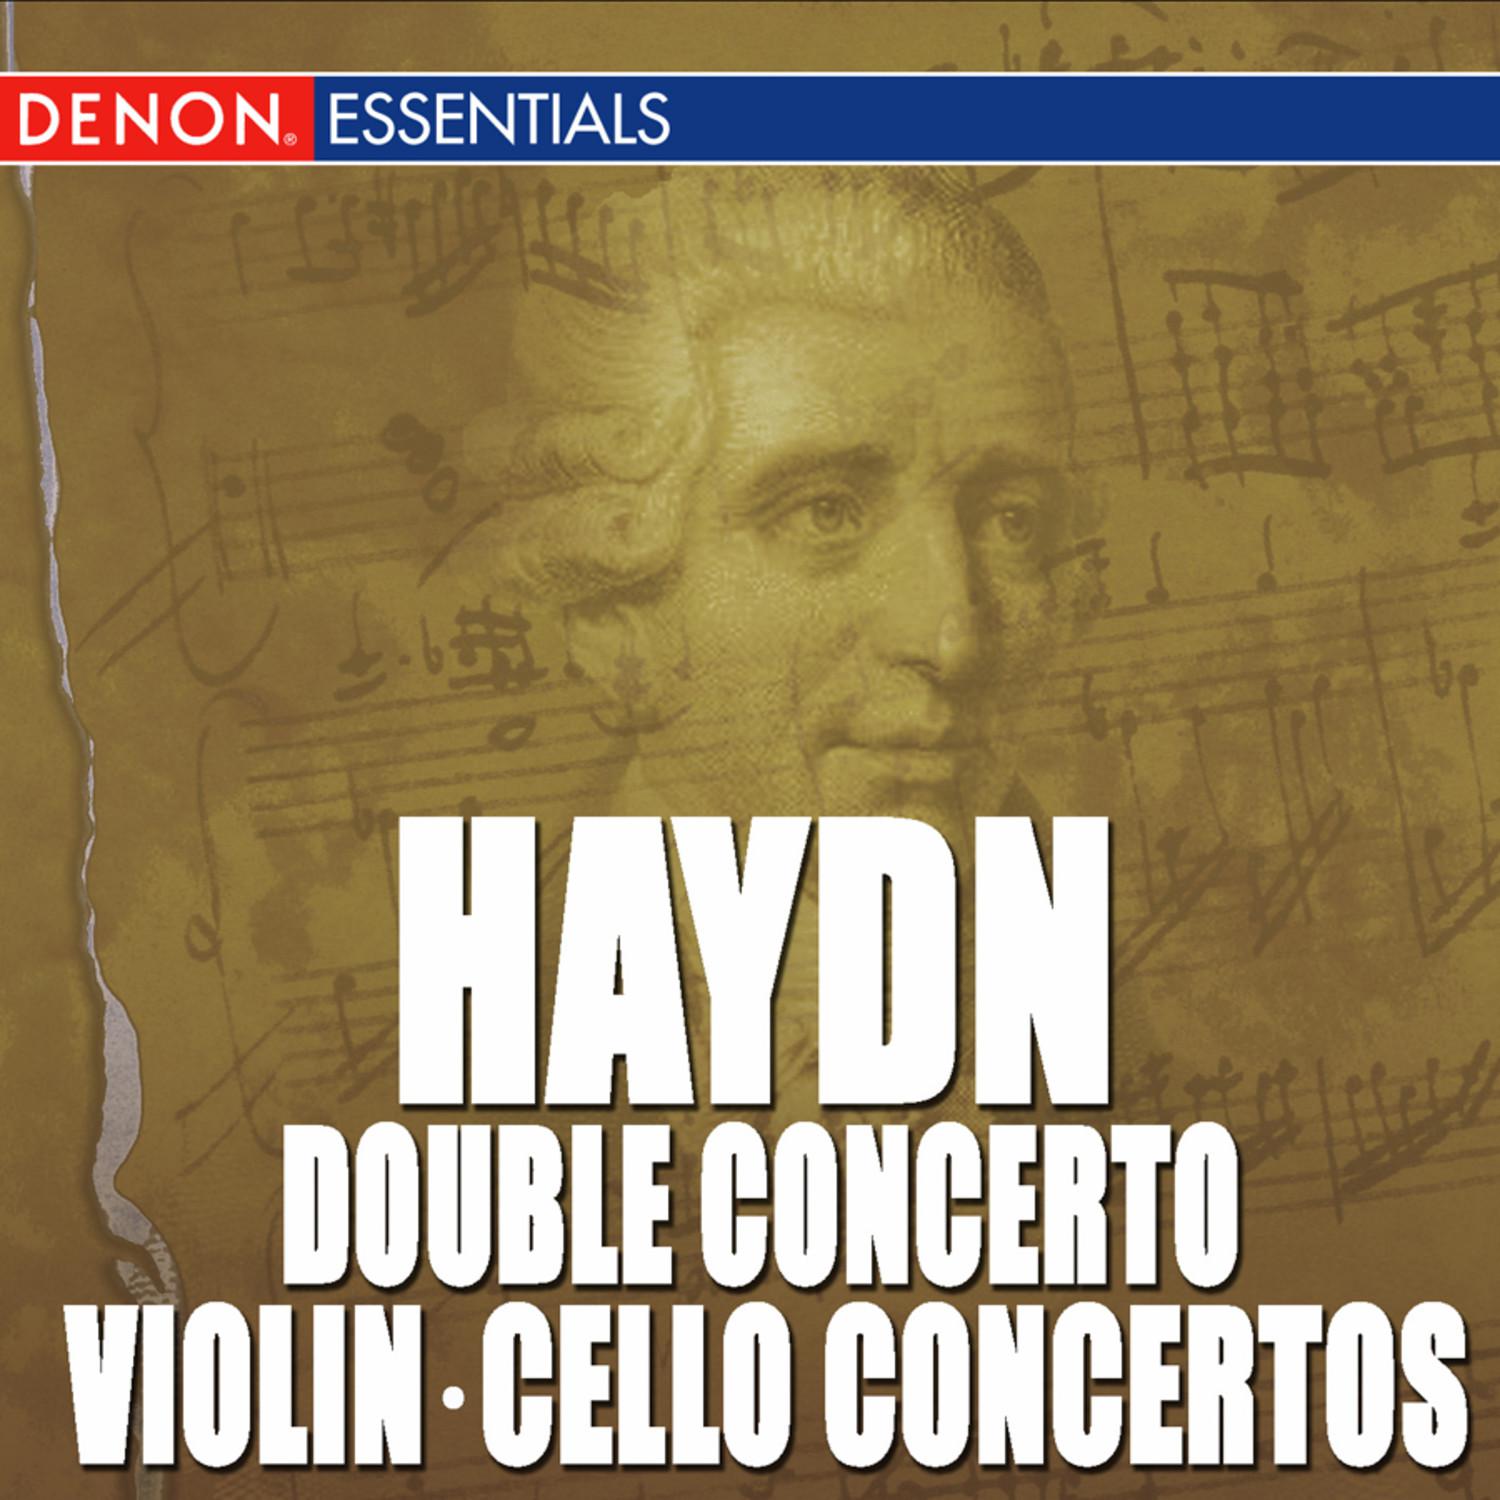 Concerto for Violin & Orchestra No. 1: I. Allegro moderato